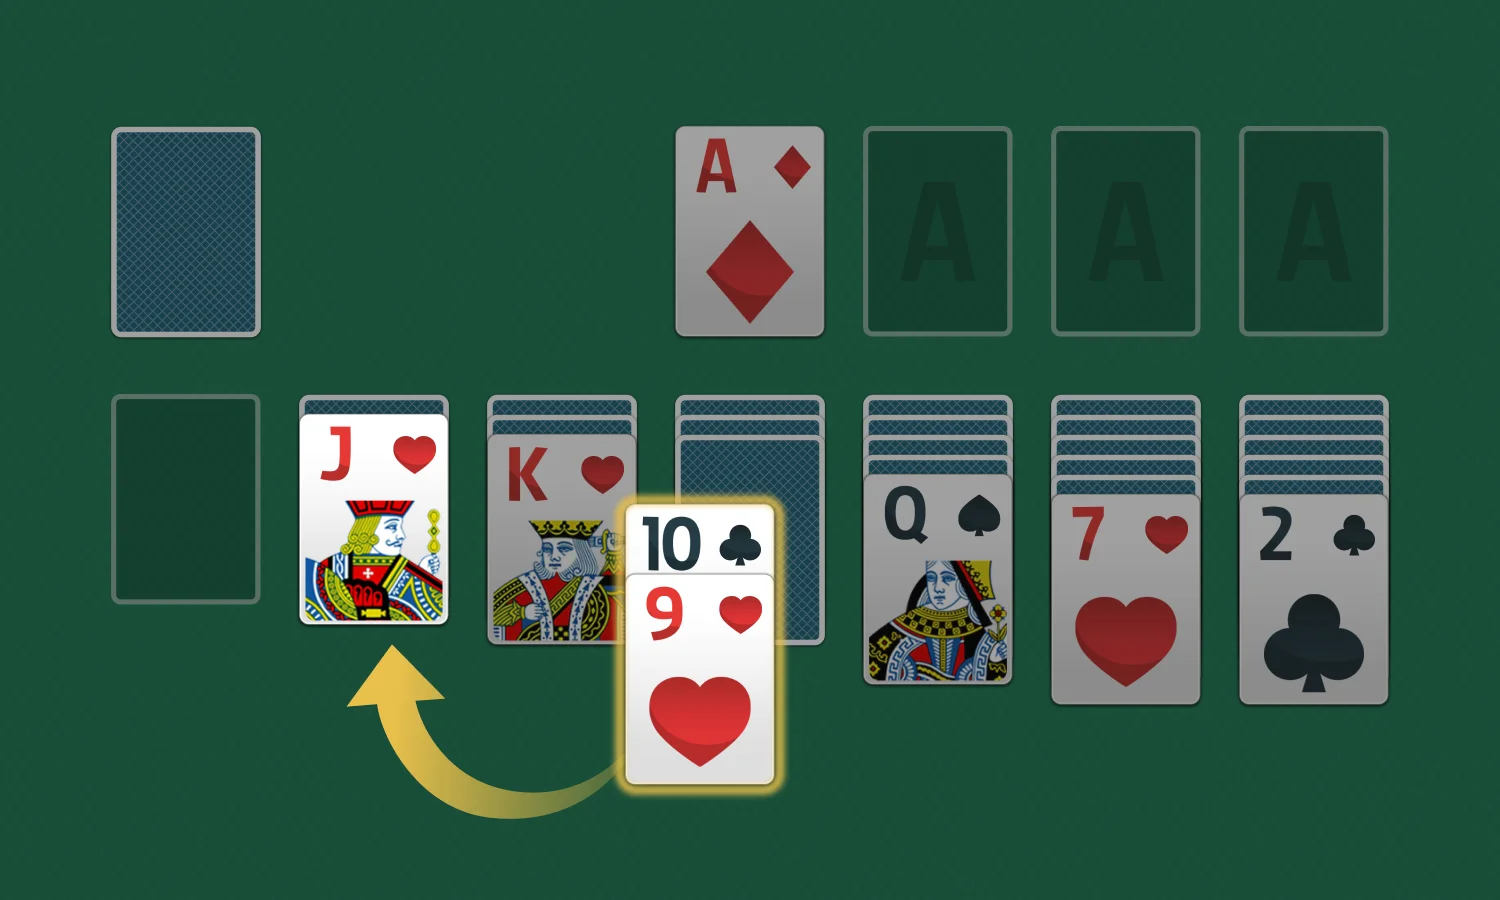 Comment jouer au Solitaire: Empiler des séquences de cartes